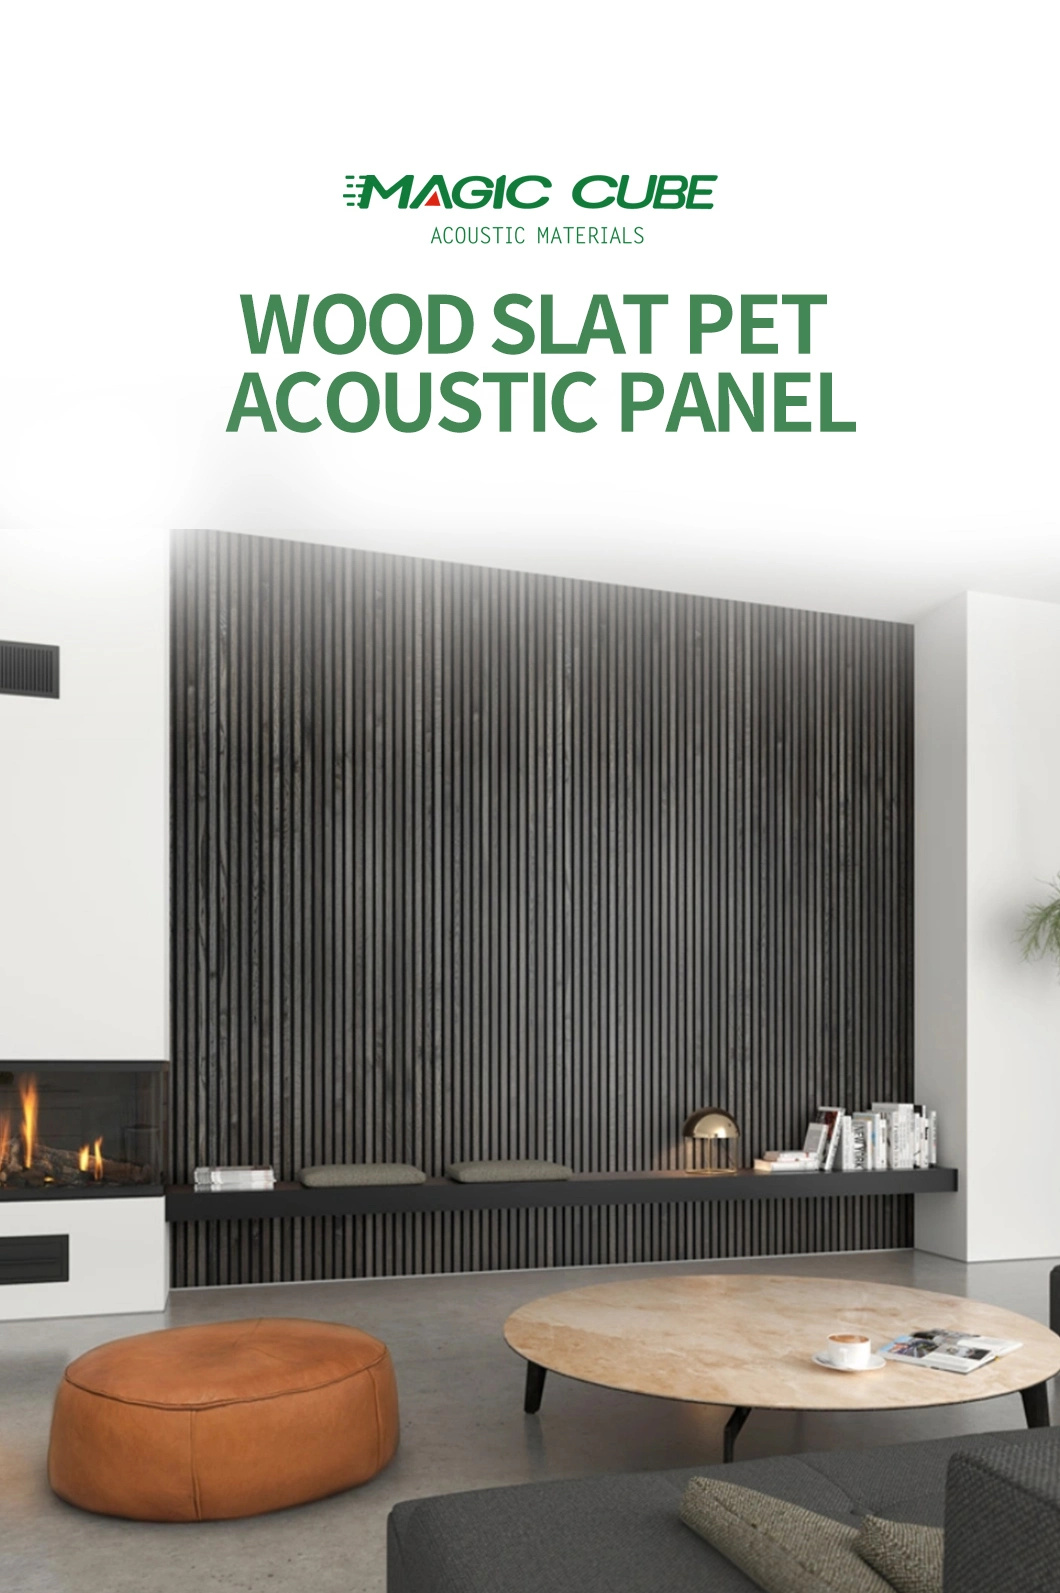 Slat Wall Covering MDF Wood Veneer Pet Acoustic Slatted Wooden Ceiling Panel